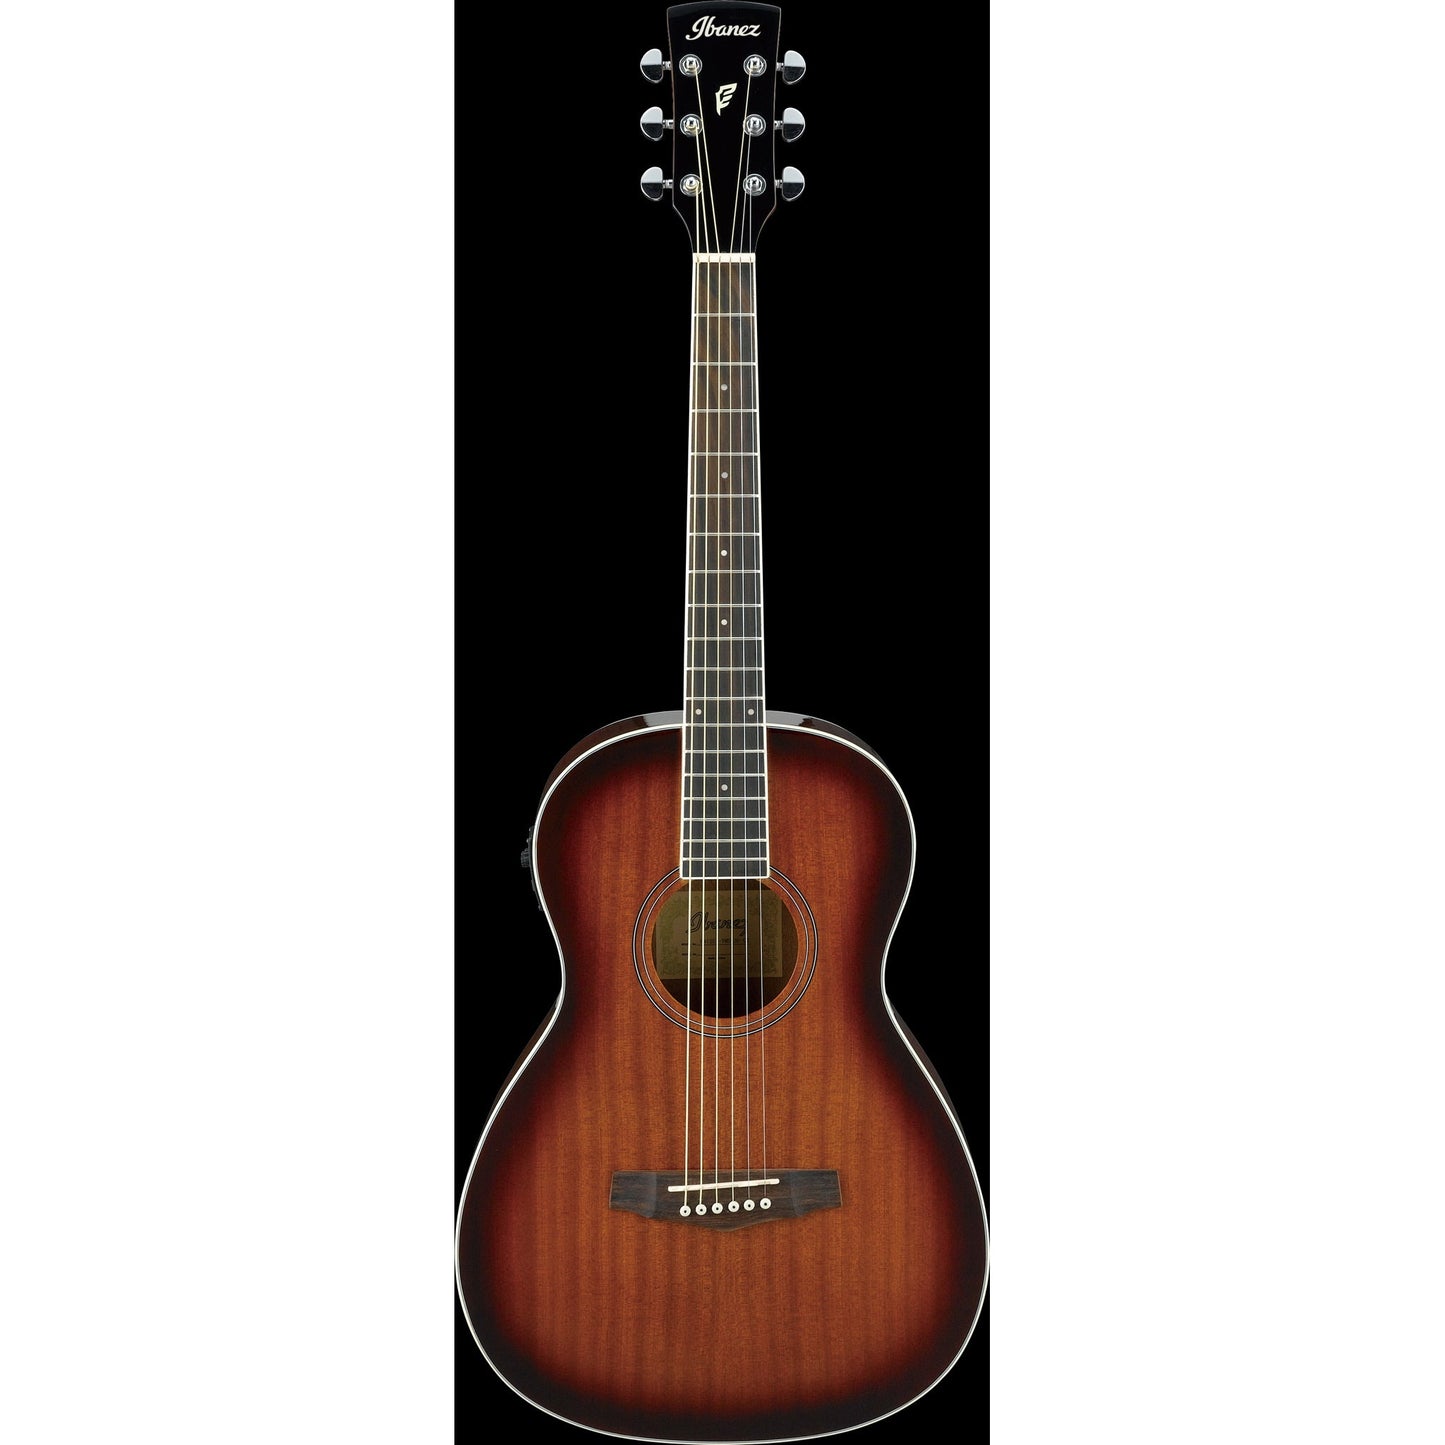 Ibanez PN12E Performance Series Parlor Acoustic/Electric Guitar (Vintage Mahogany Sunburst)